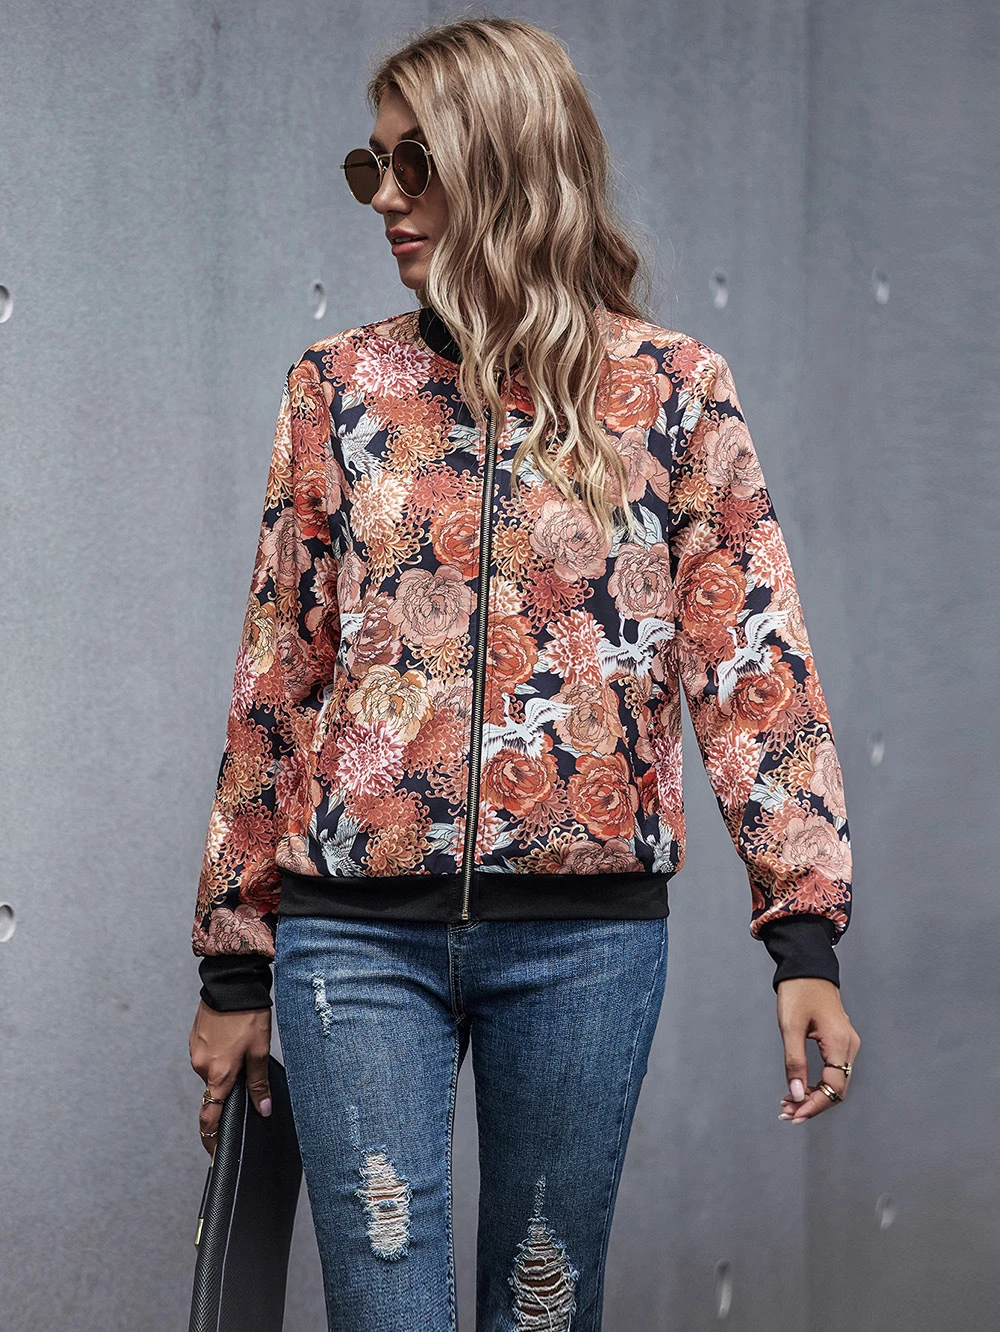 Primavera otoño Floral Print Bomber abrigos chaqueta con cremalleras abrigo mujer abrigo Shein Urbane de las mujeres chaquetas primavera 2021|chaquetas básicas| AliExpress